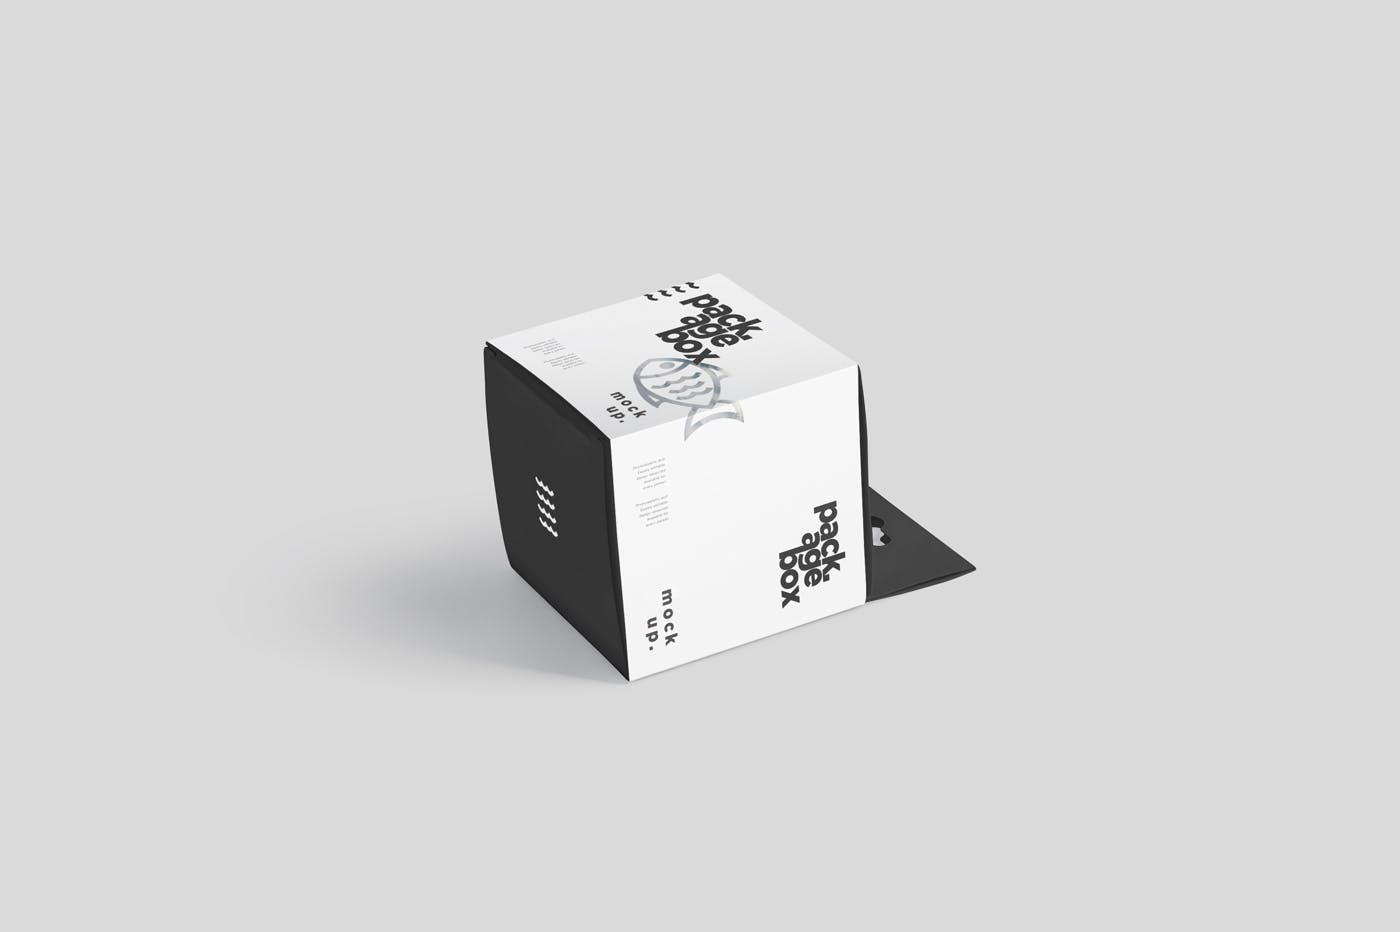 挂耳式方形产品包装盒样机模板 Package Box Mockup Set – Square With Hanger插图4